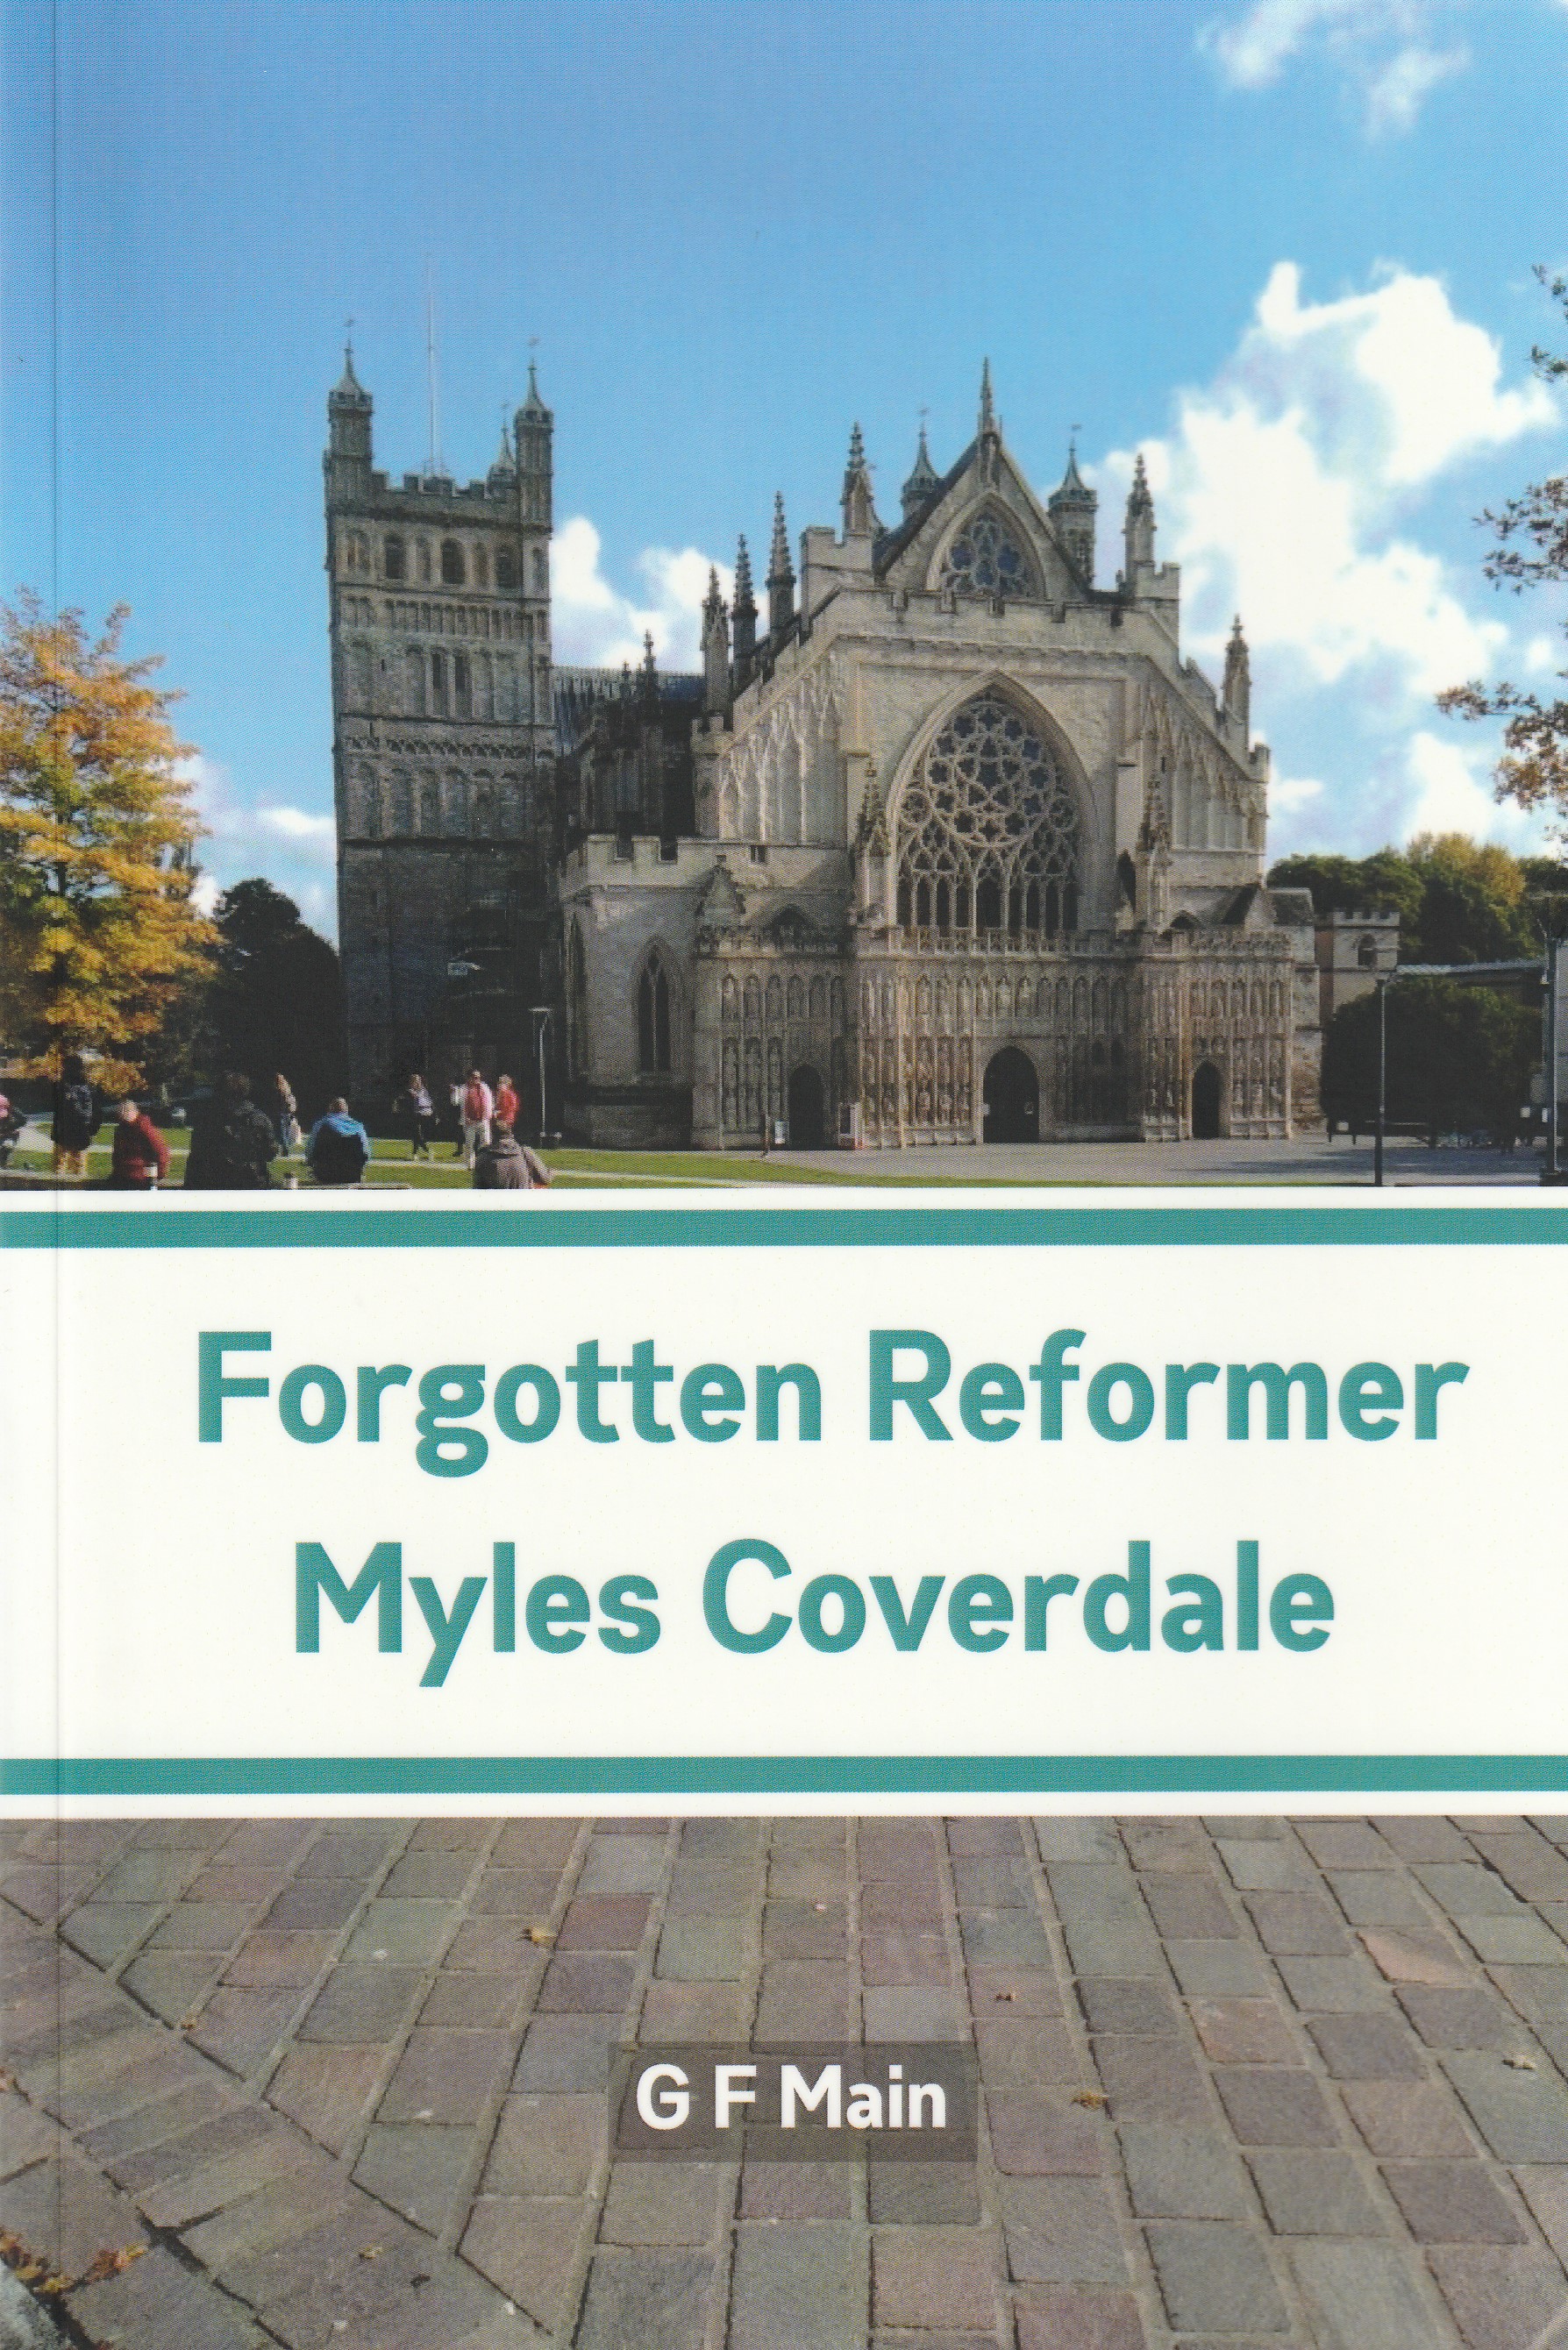 Forgotten Reformer: Myles Coverdale